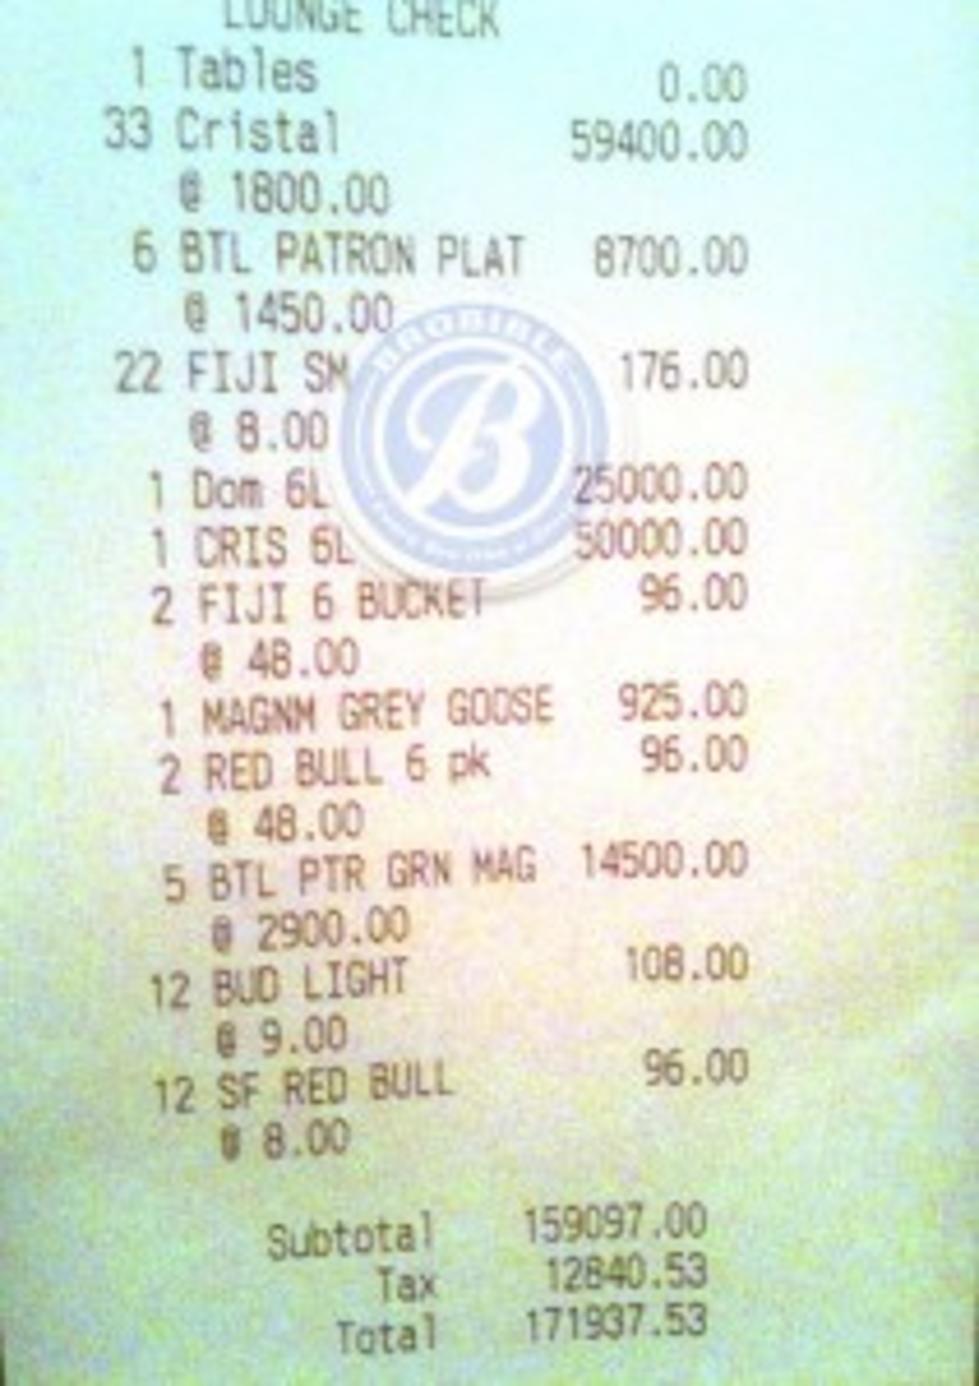 LeBron James is generous in Las Vegas